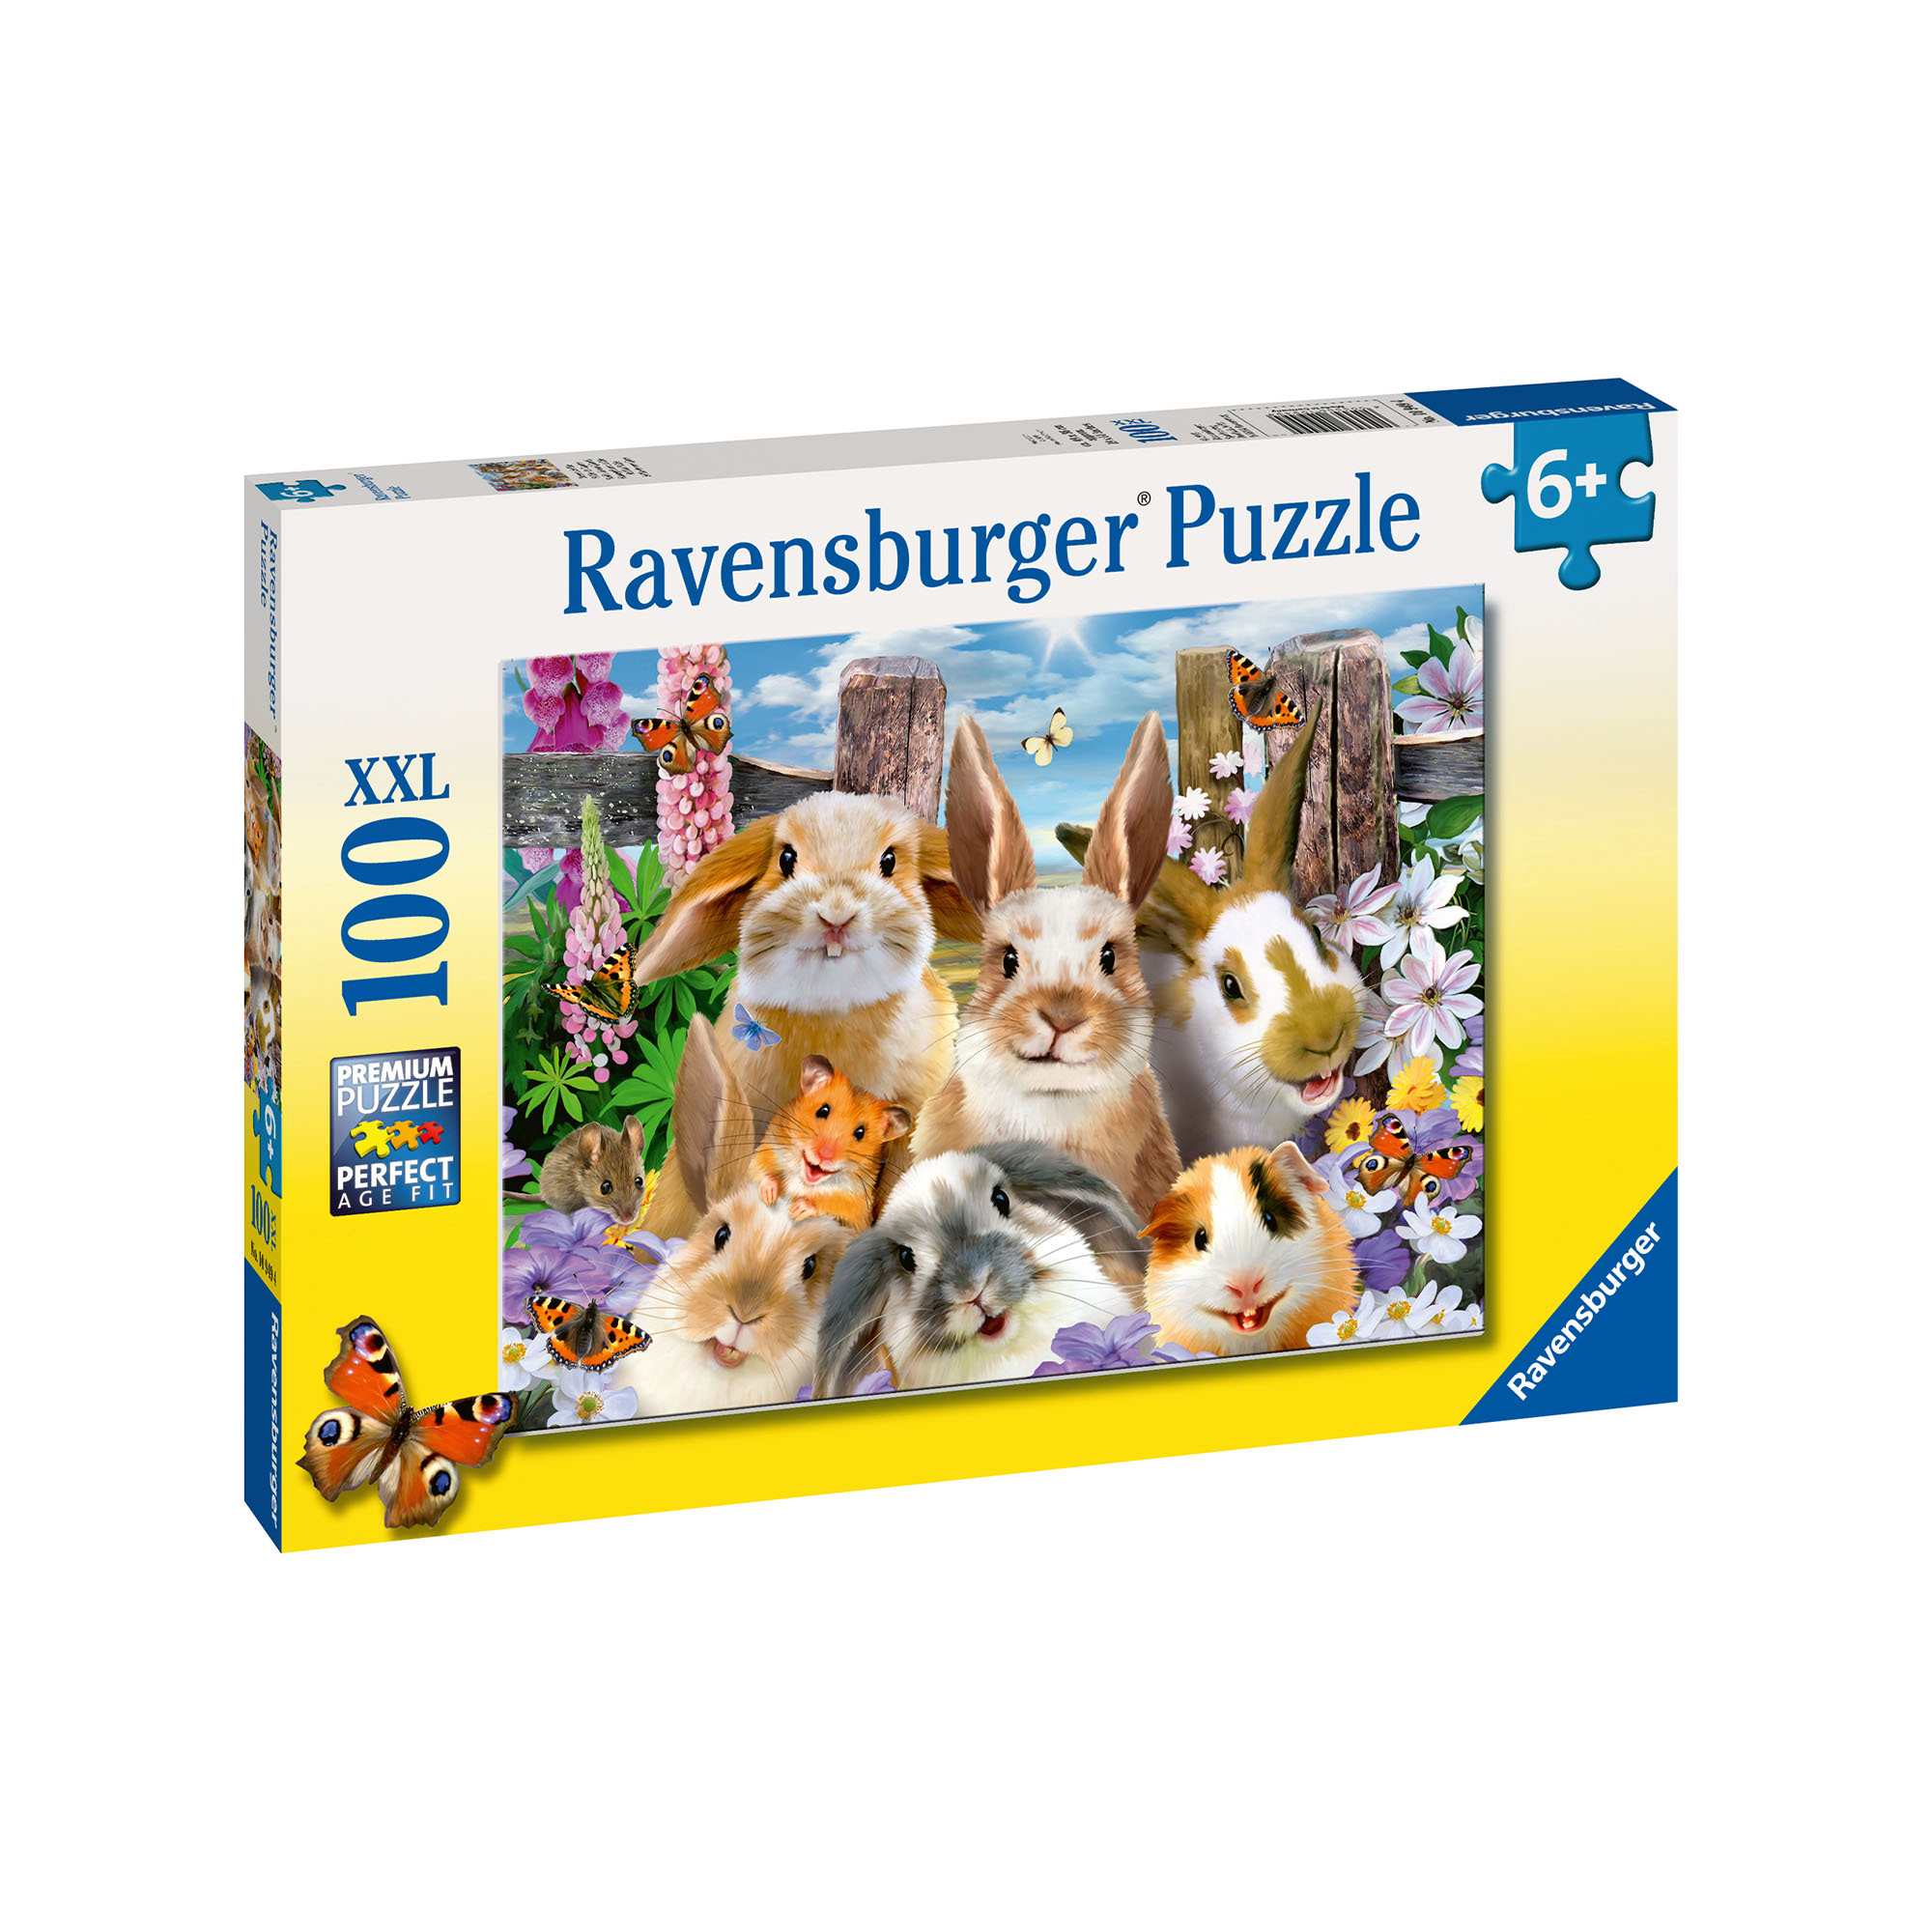 Ravensburger Puzzle 100 pezzi 10949 - Selfie di coniglietti, , large